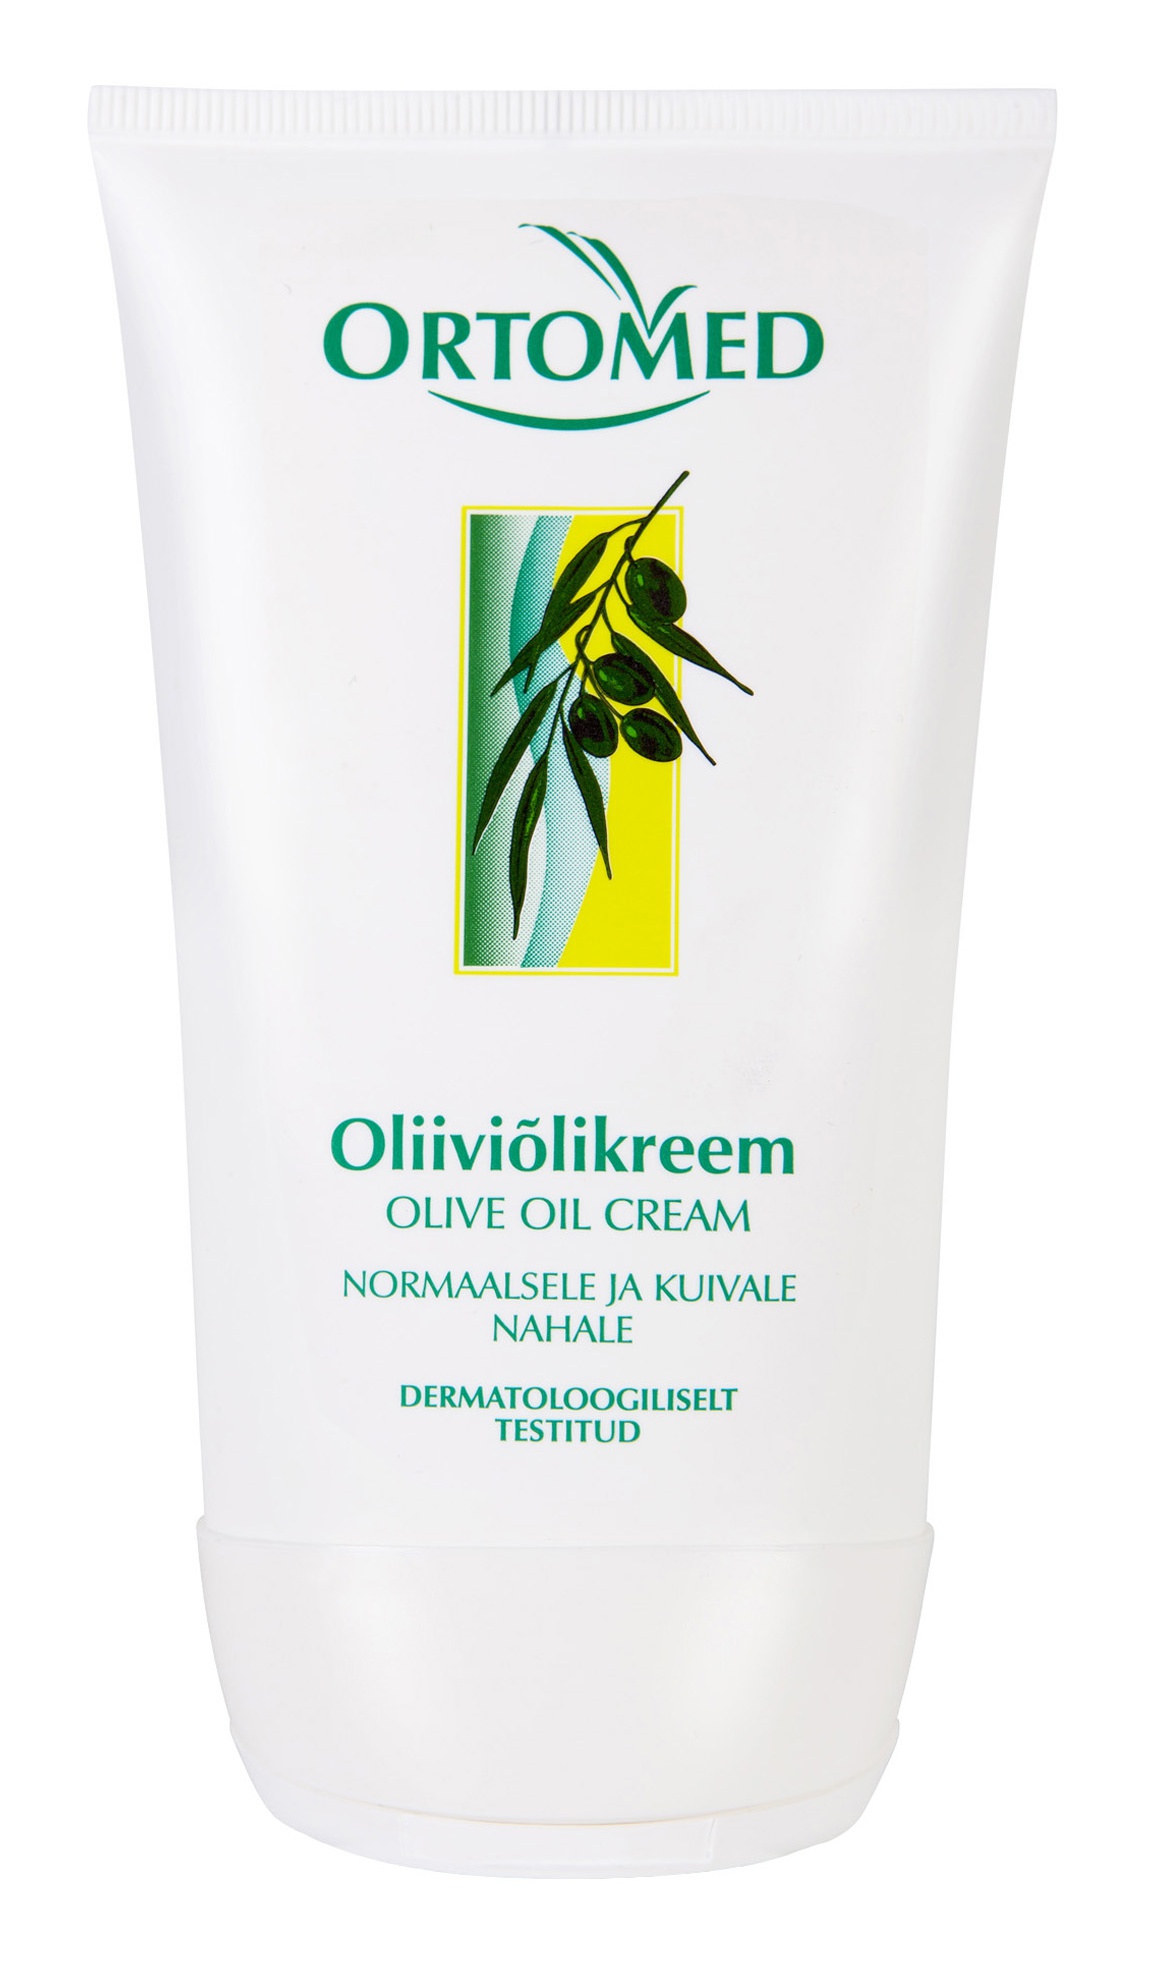 Ortomed Oliiviõlikreem Olive Oil Cream